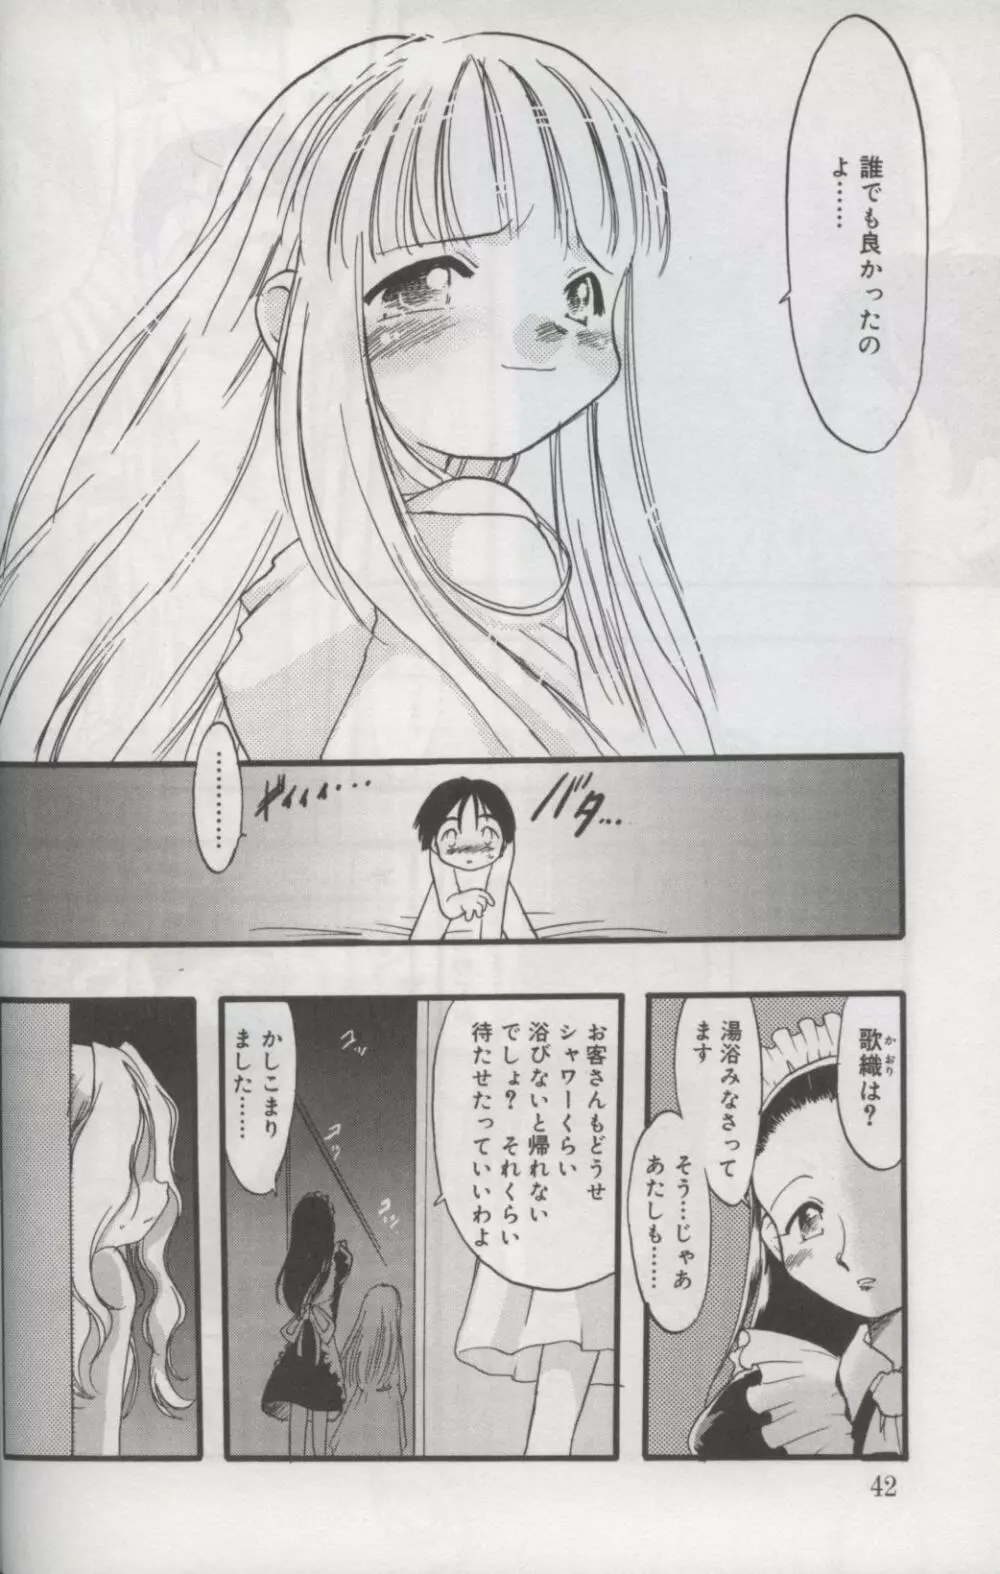 Kotori-kan Vol 3 39ページ